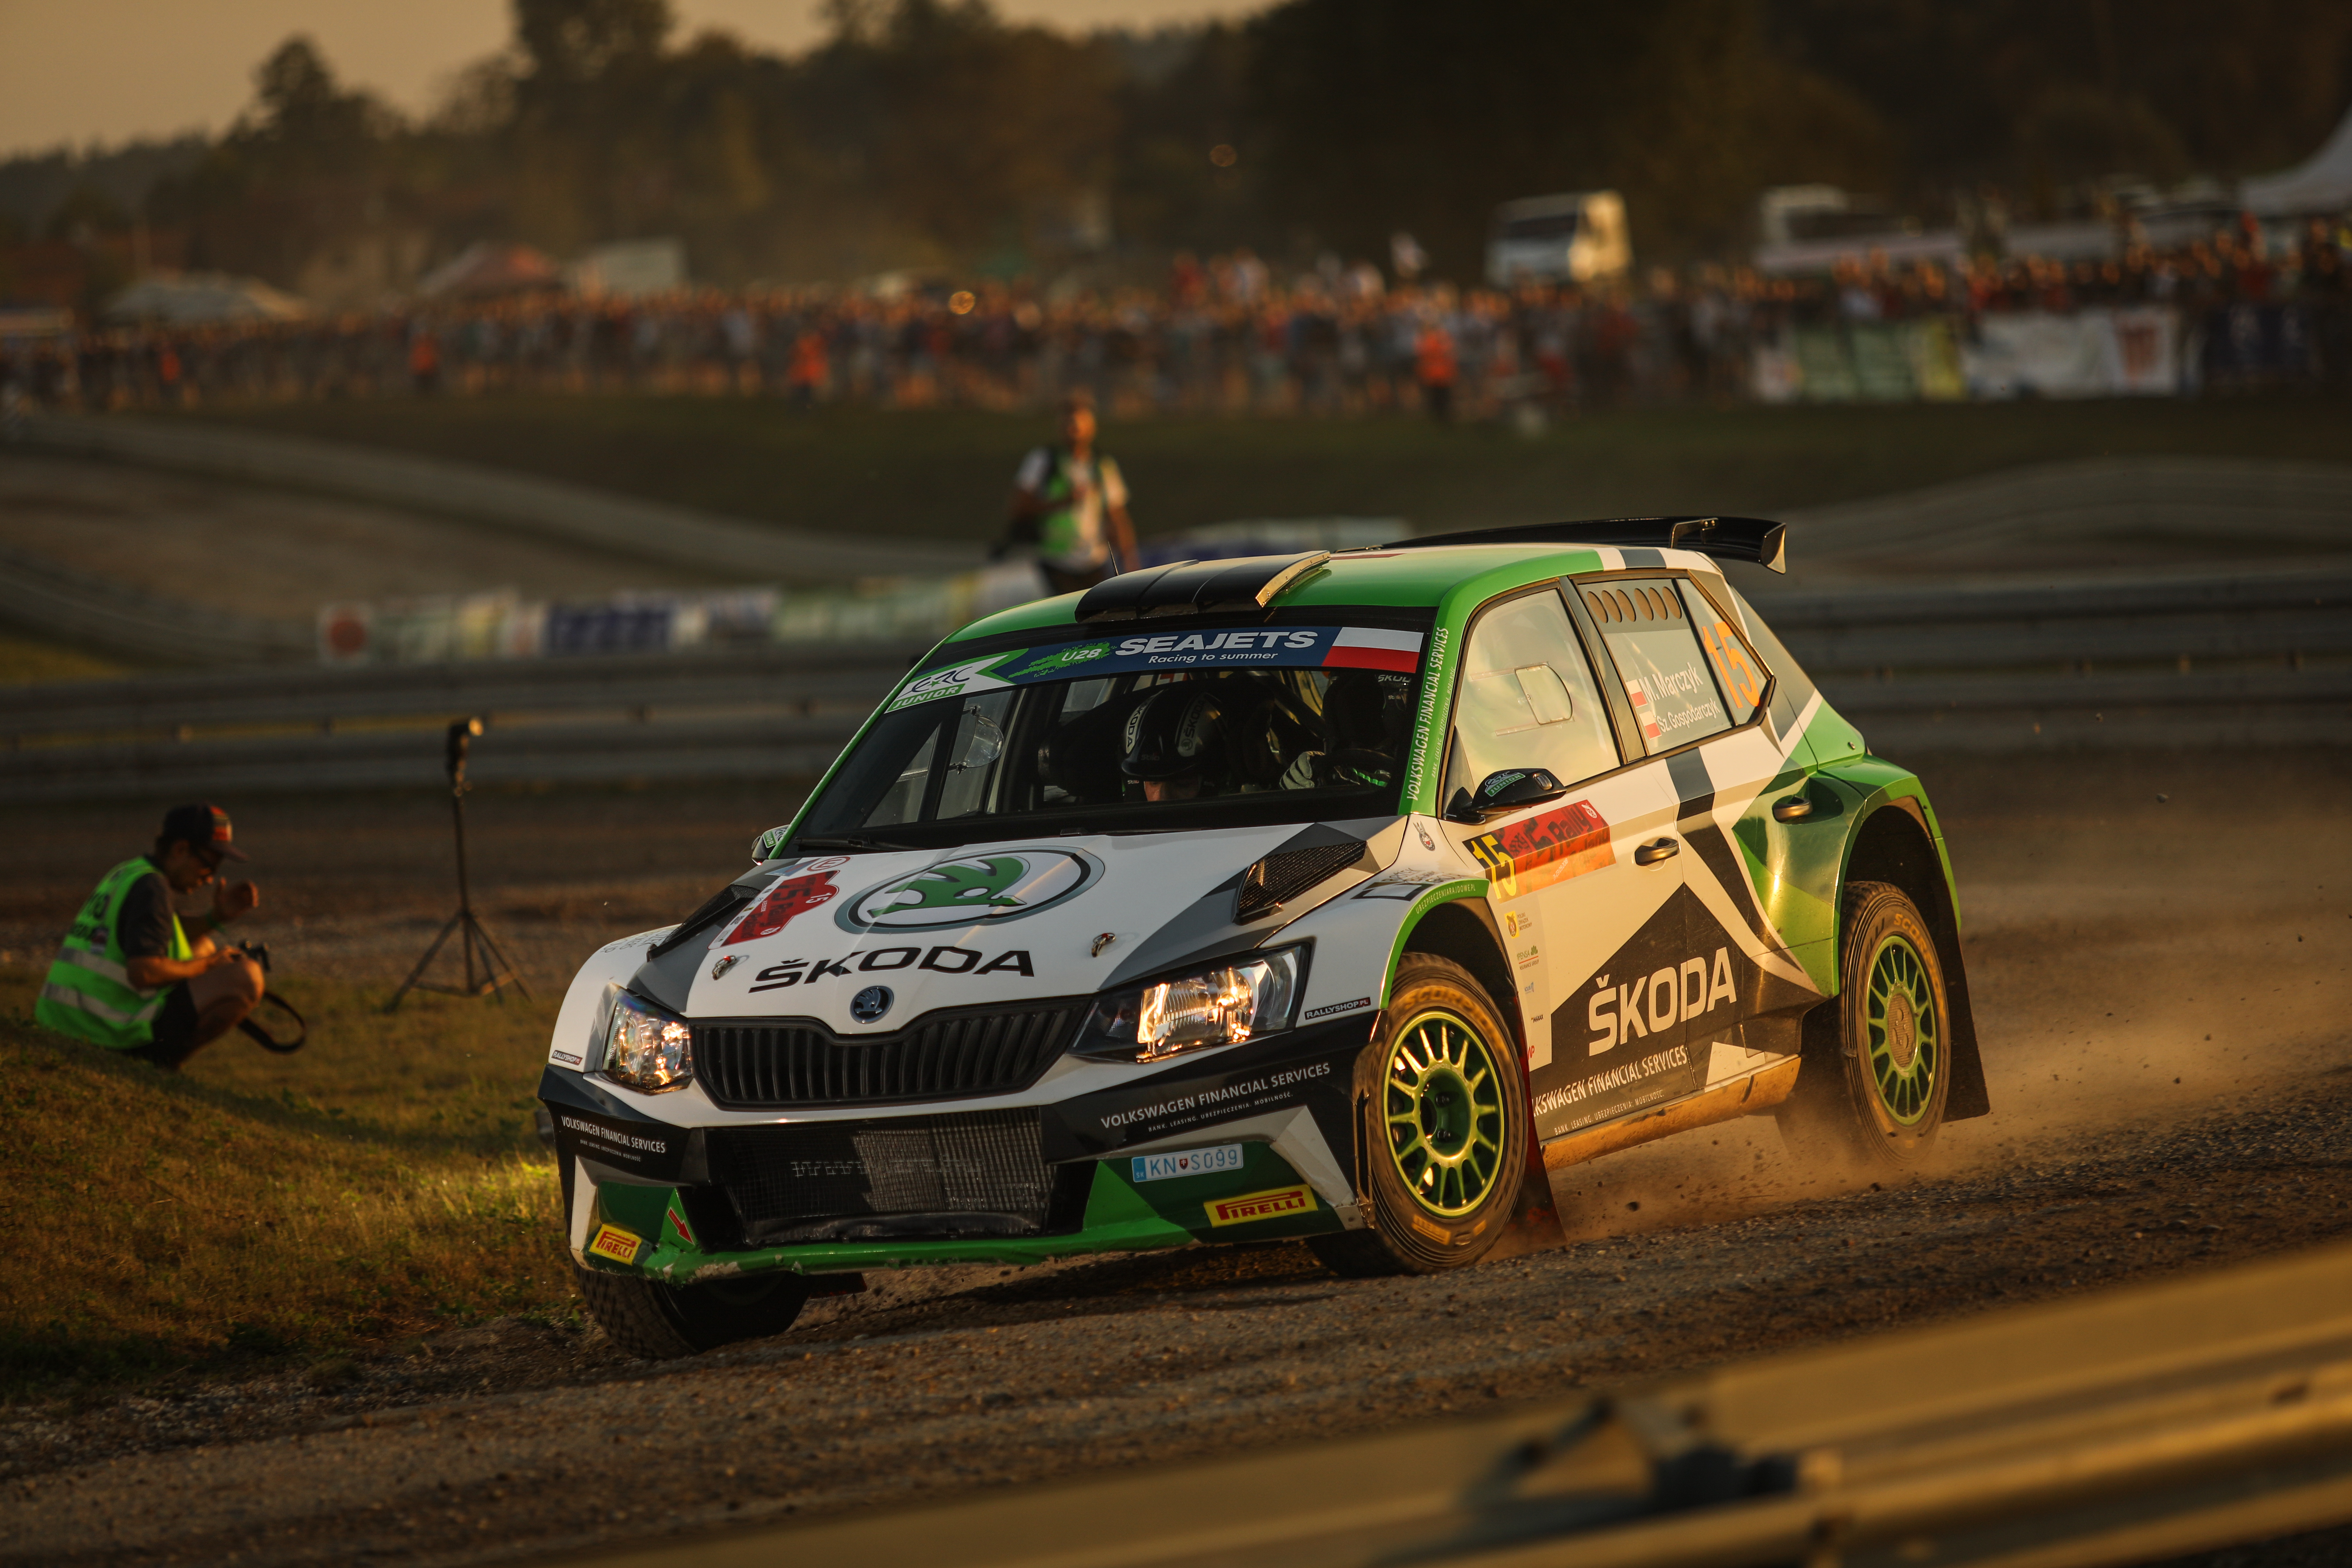 Wywiad z załogą Škoda Polska Motorsport